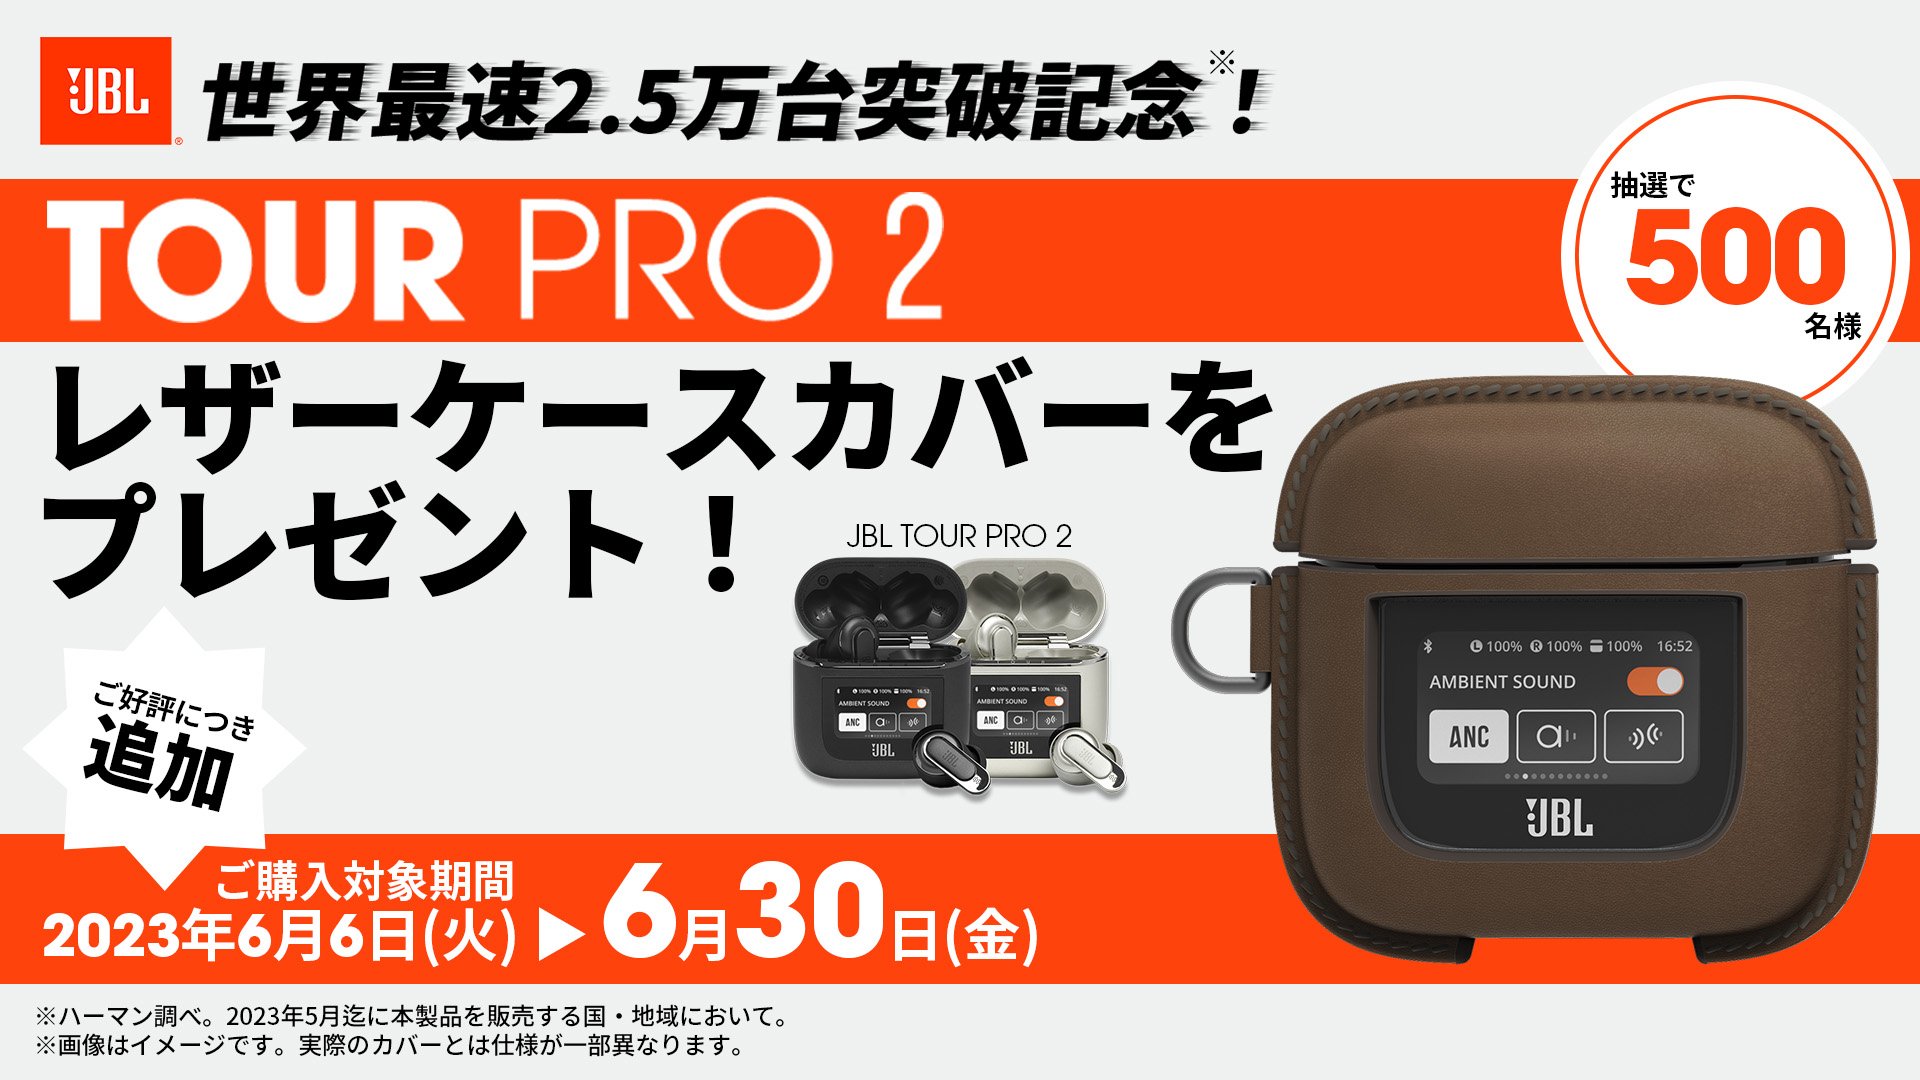 9,680円JBL tour pro2 ほぼ新品